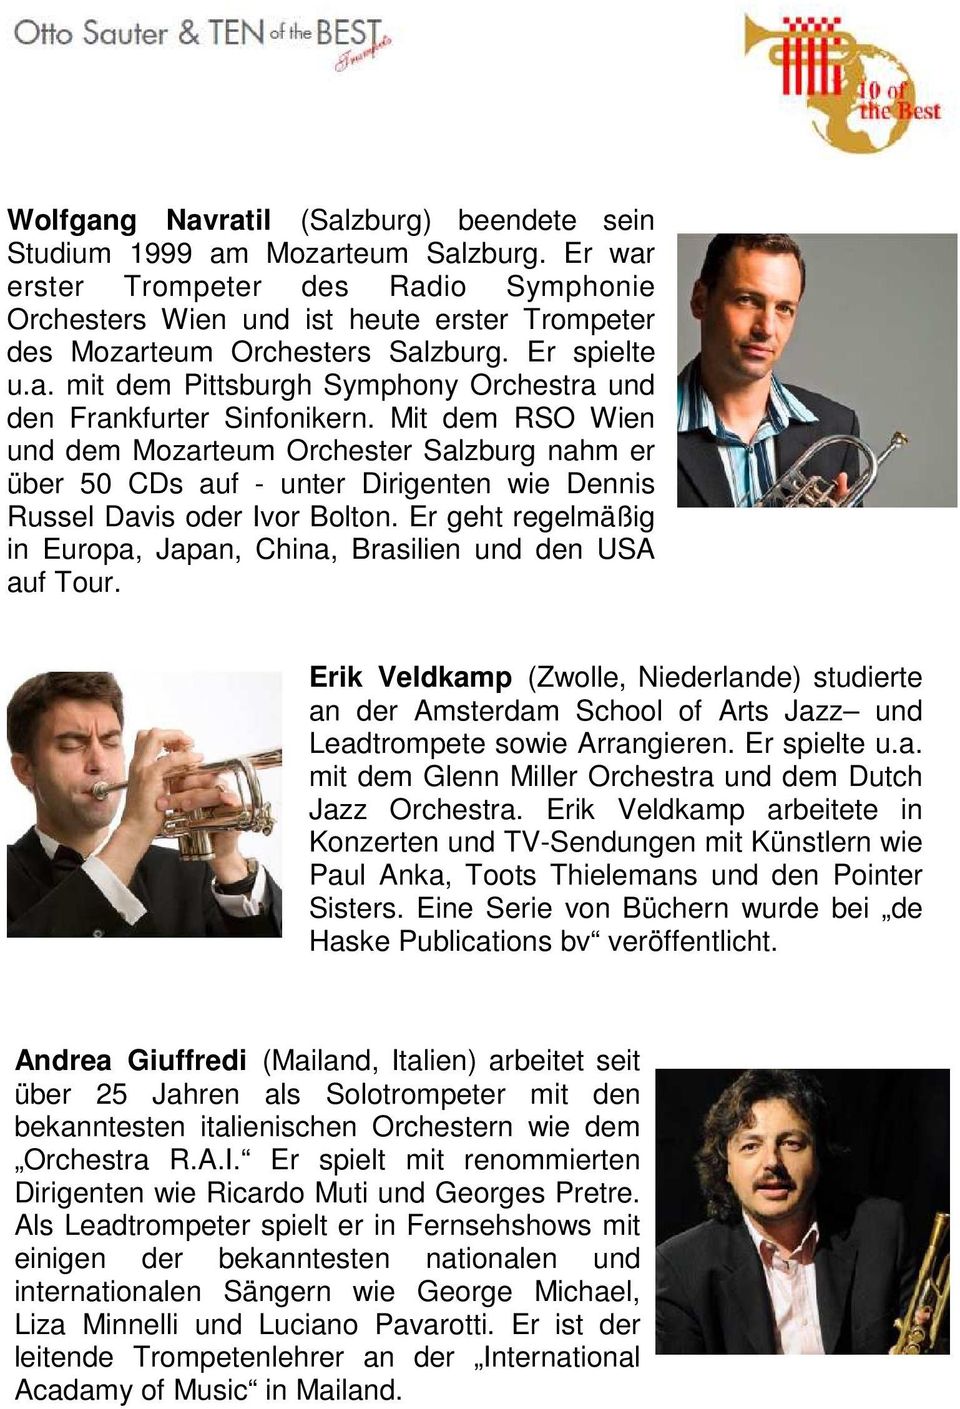 Mit dem RSO Wien und dem Mozarteum Orchester Salzburg nahm er über 50 CDs auf - unter Dirigenten wie Dennis Russel Davis oder Ivor Bolton.